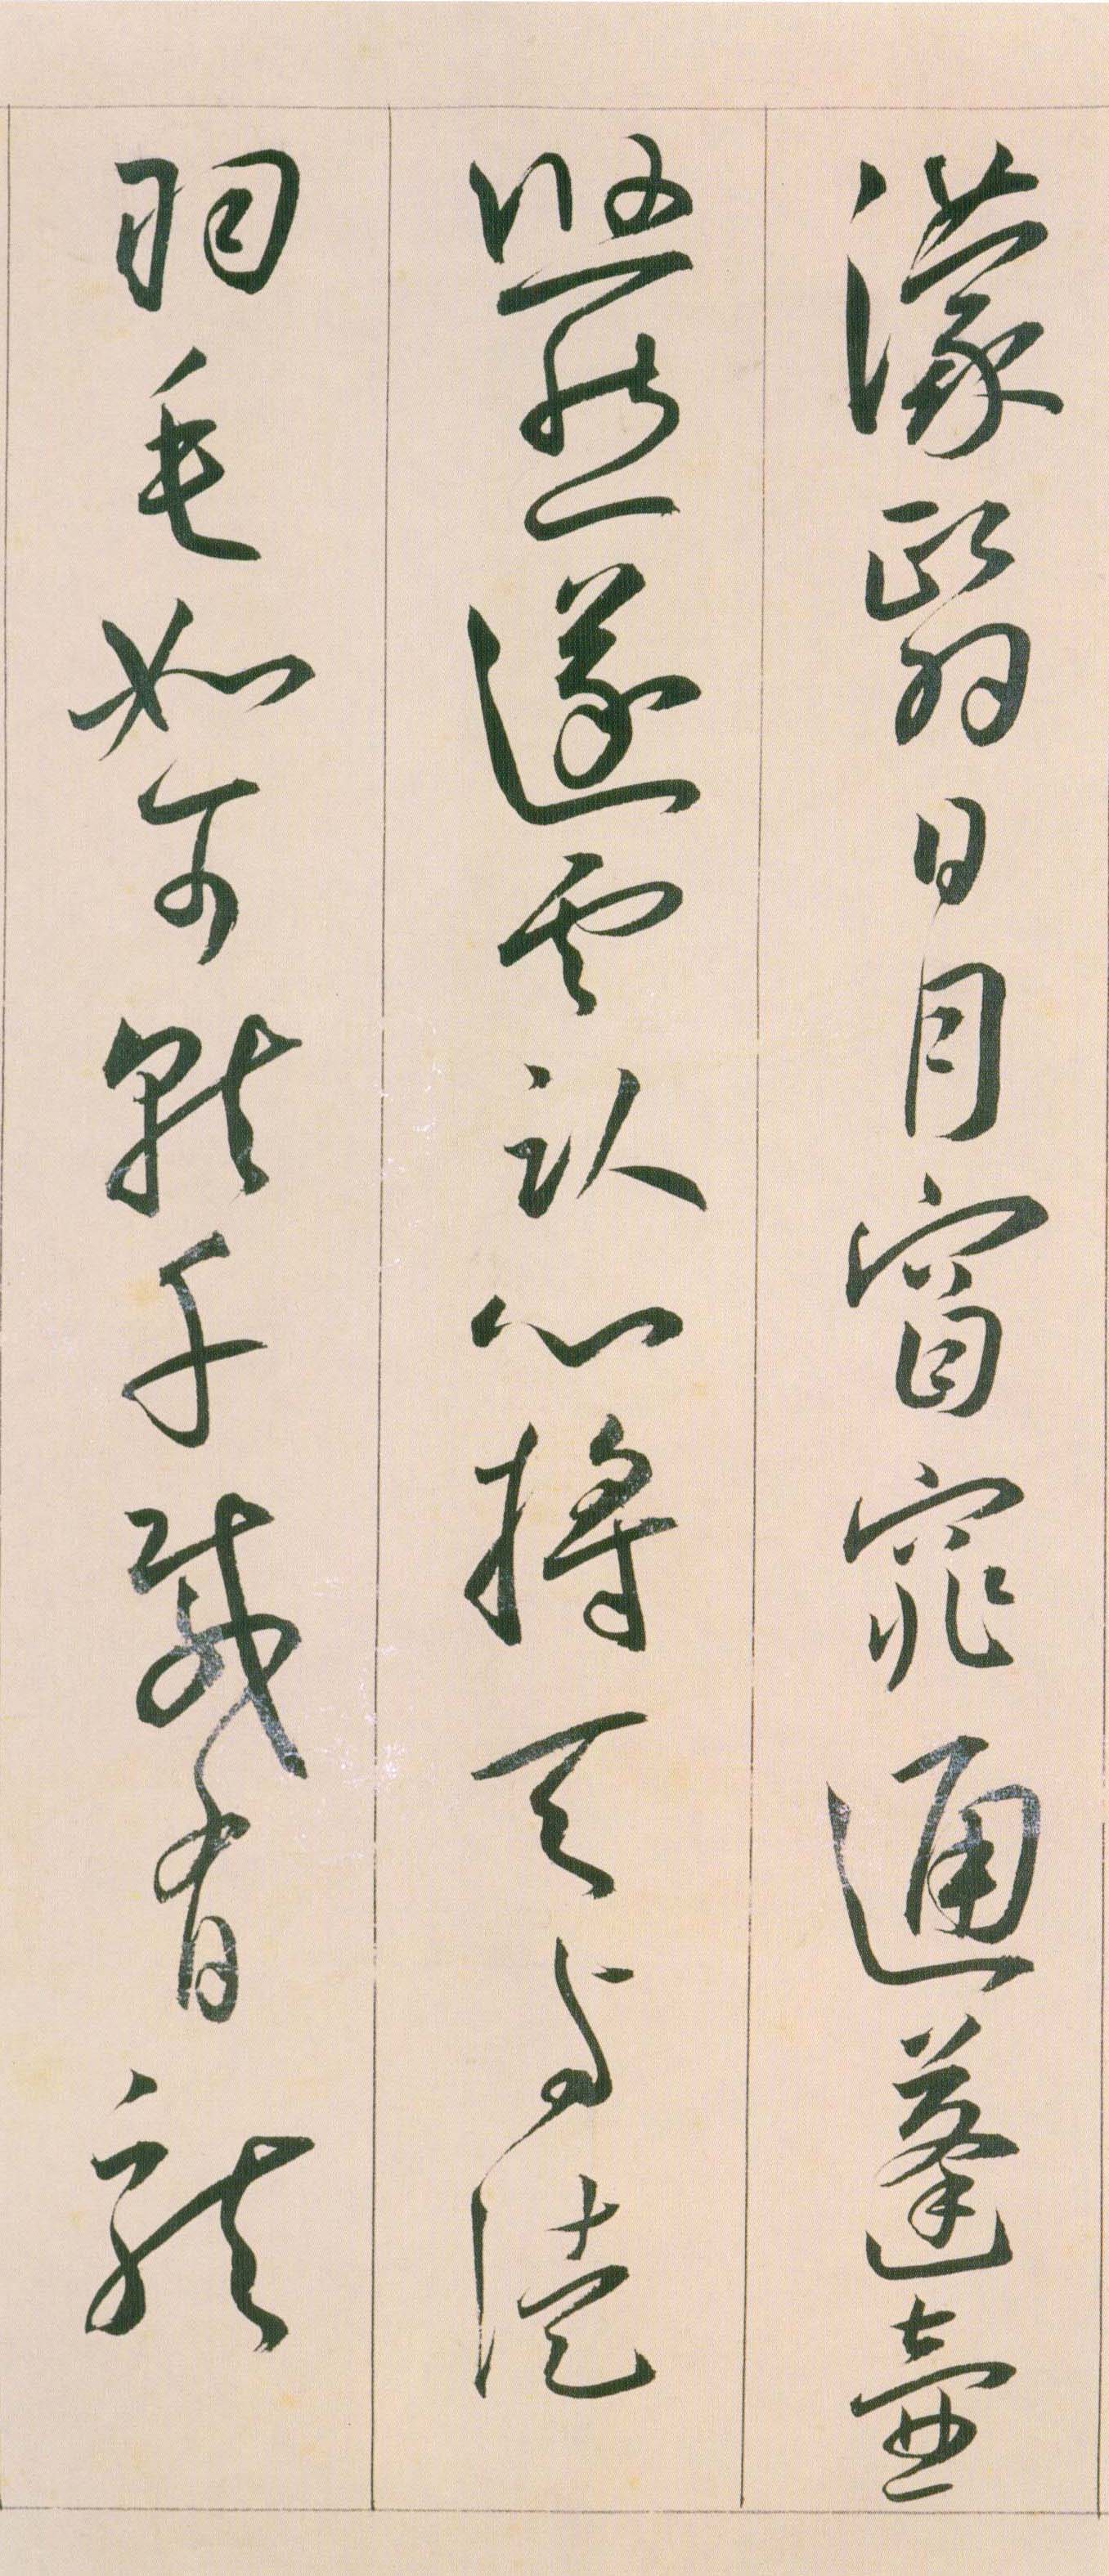 王宠《自书游包山诗》卷-天津艺术博物院藏(图29)